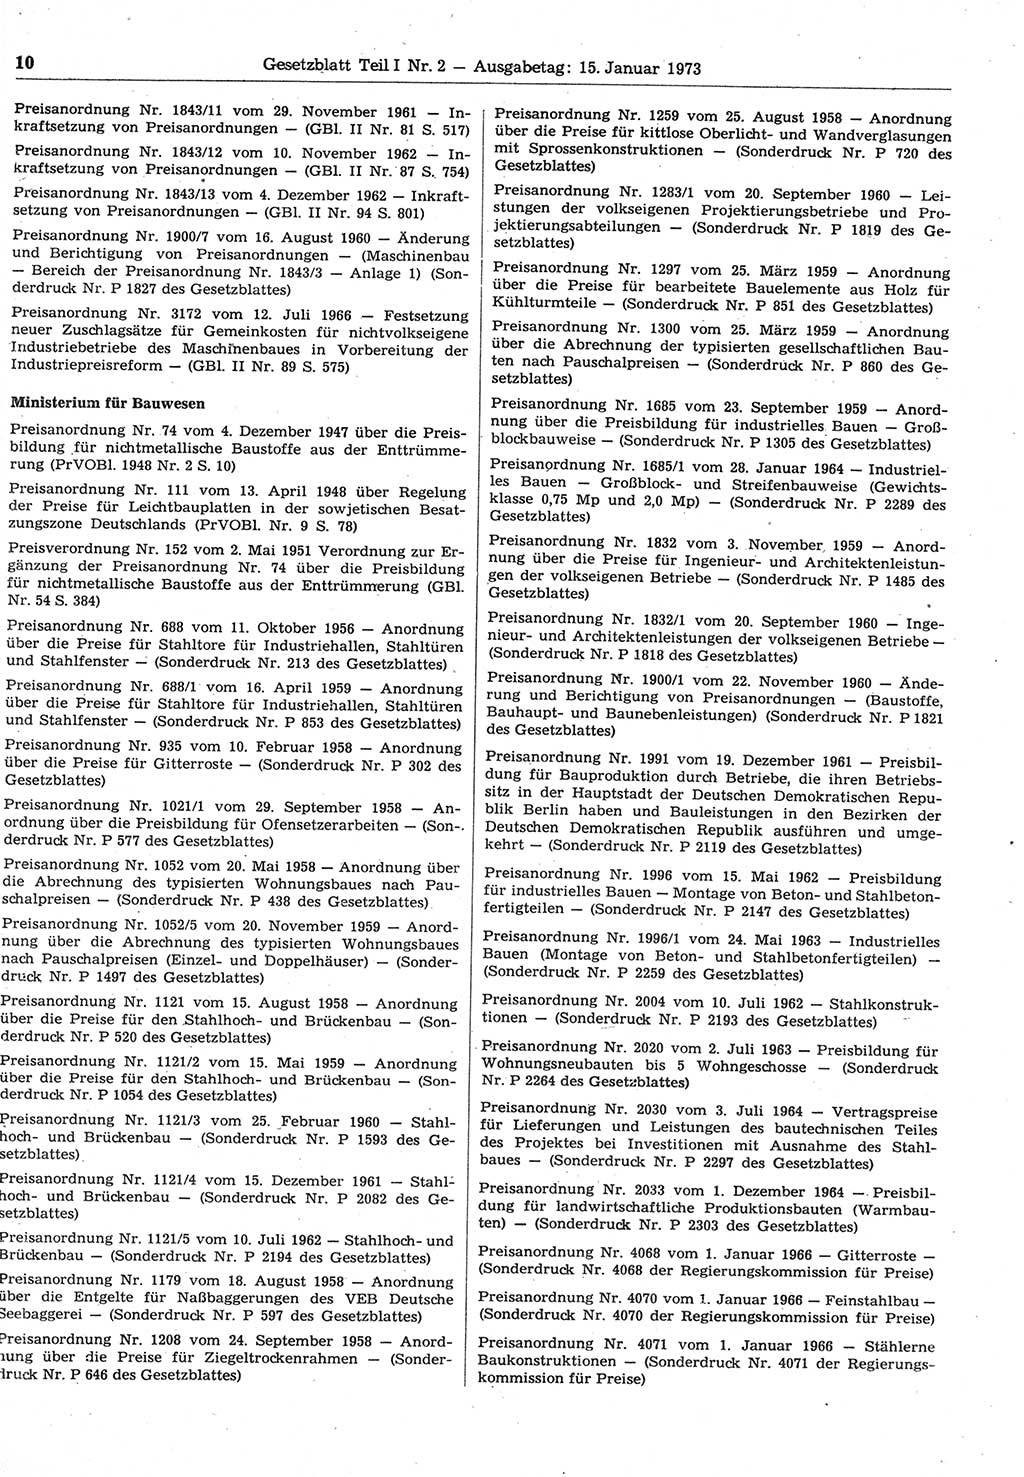 Gesetzblatt (GBl.) der Deutschen Demokratischen Republik (DDR) Teil Ⅰ 1973, Seite 10 (GBl. DDR Ⅰ 1973, S. 10)